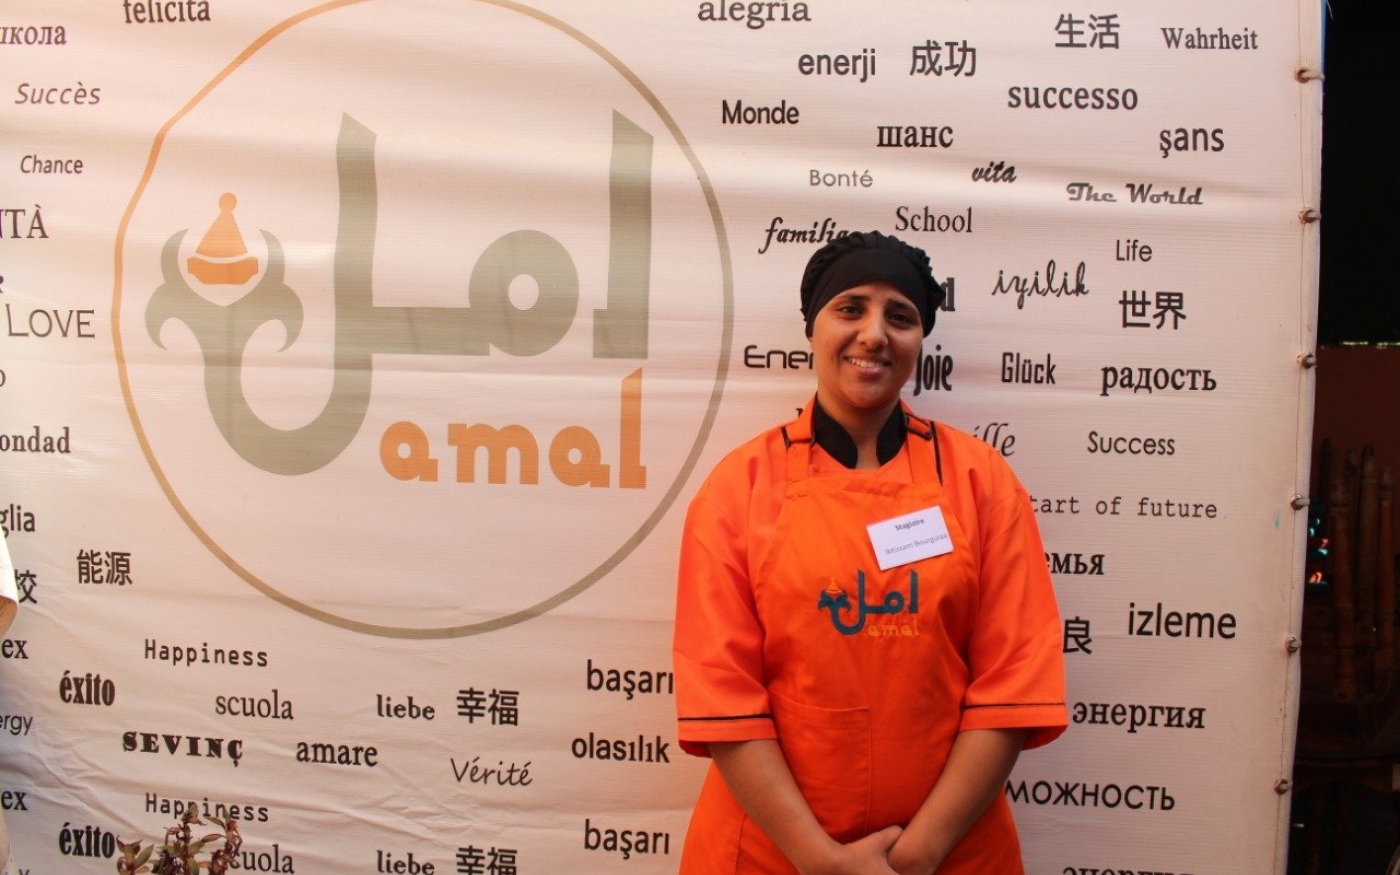 Ibtissam est diplômée du programme de formation Amal et travaille maintenant comme chef (Amal Training Centre and Restaurant)